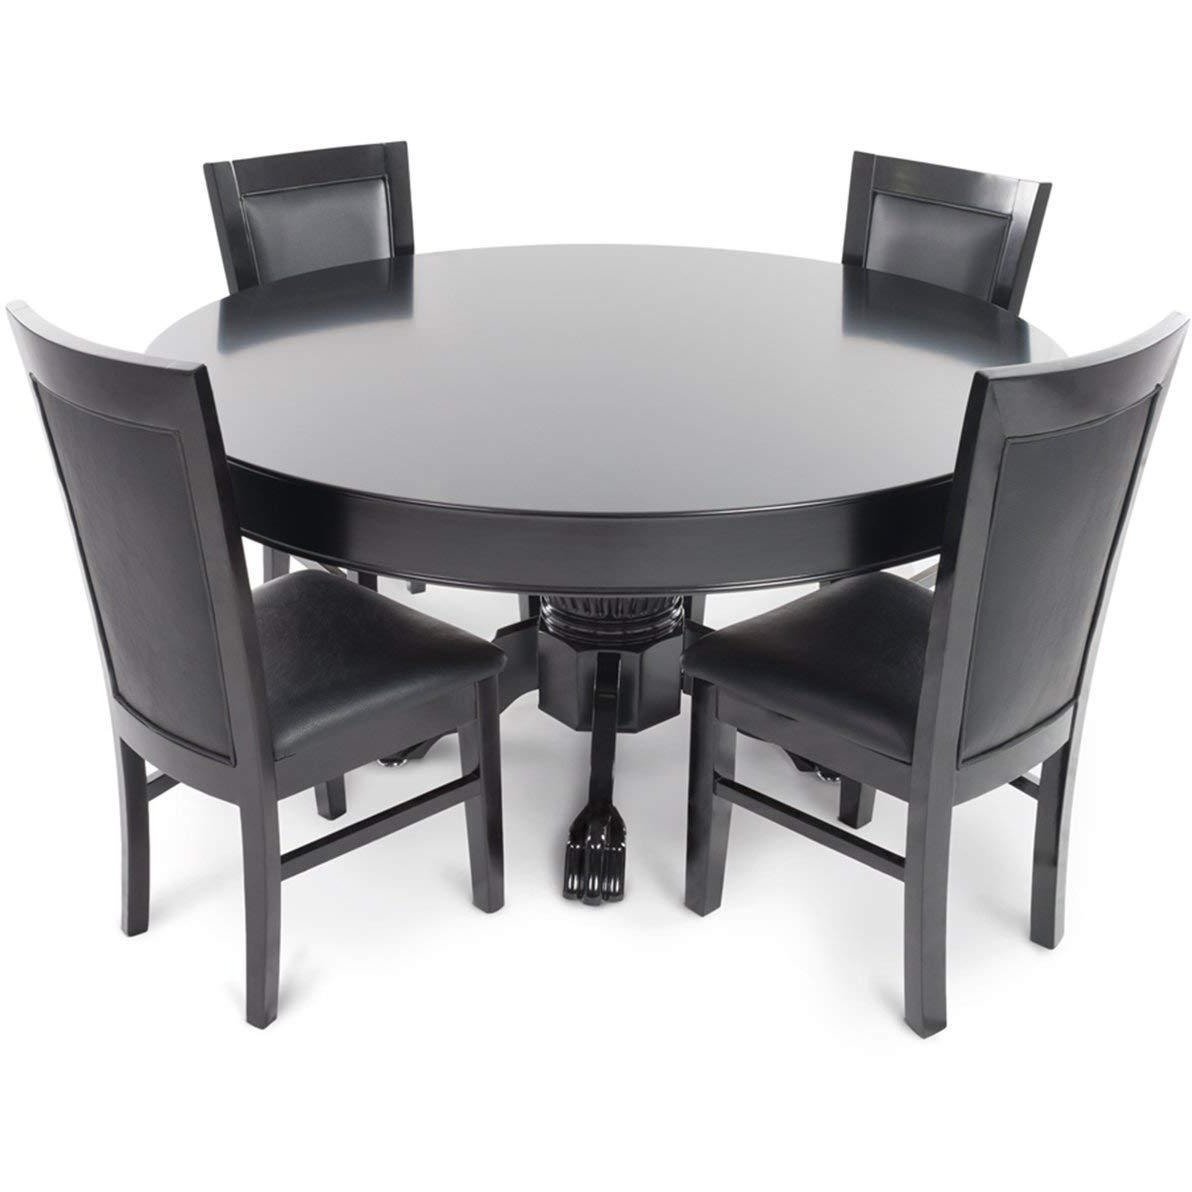 BBO Poker Tables Black Gloss Classic Poker Dining Chair Set